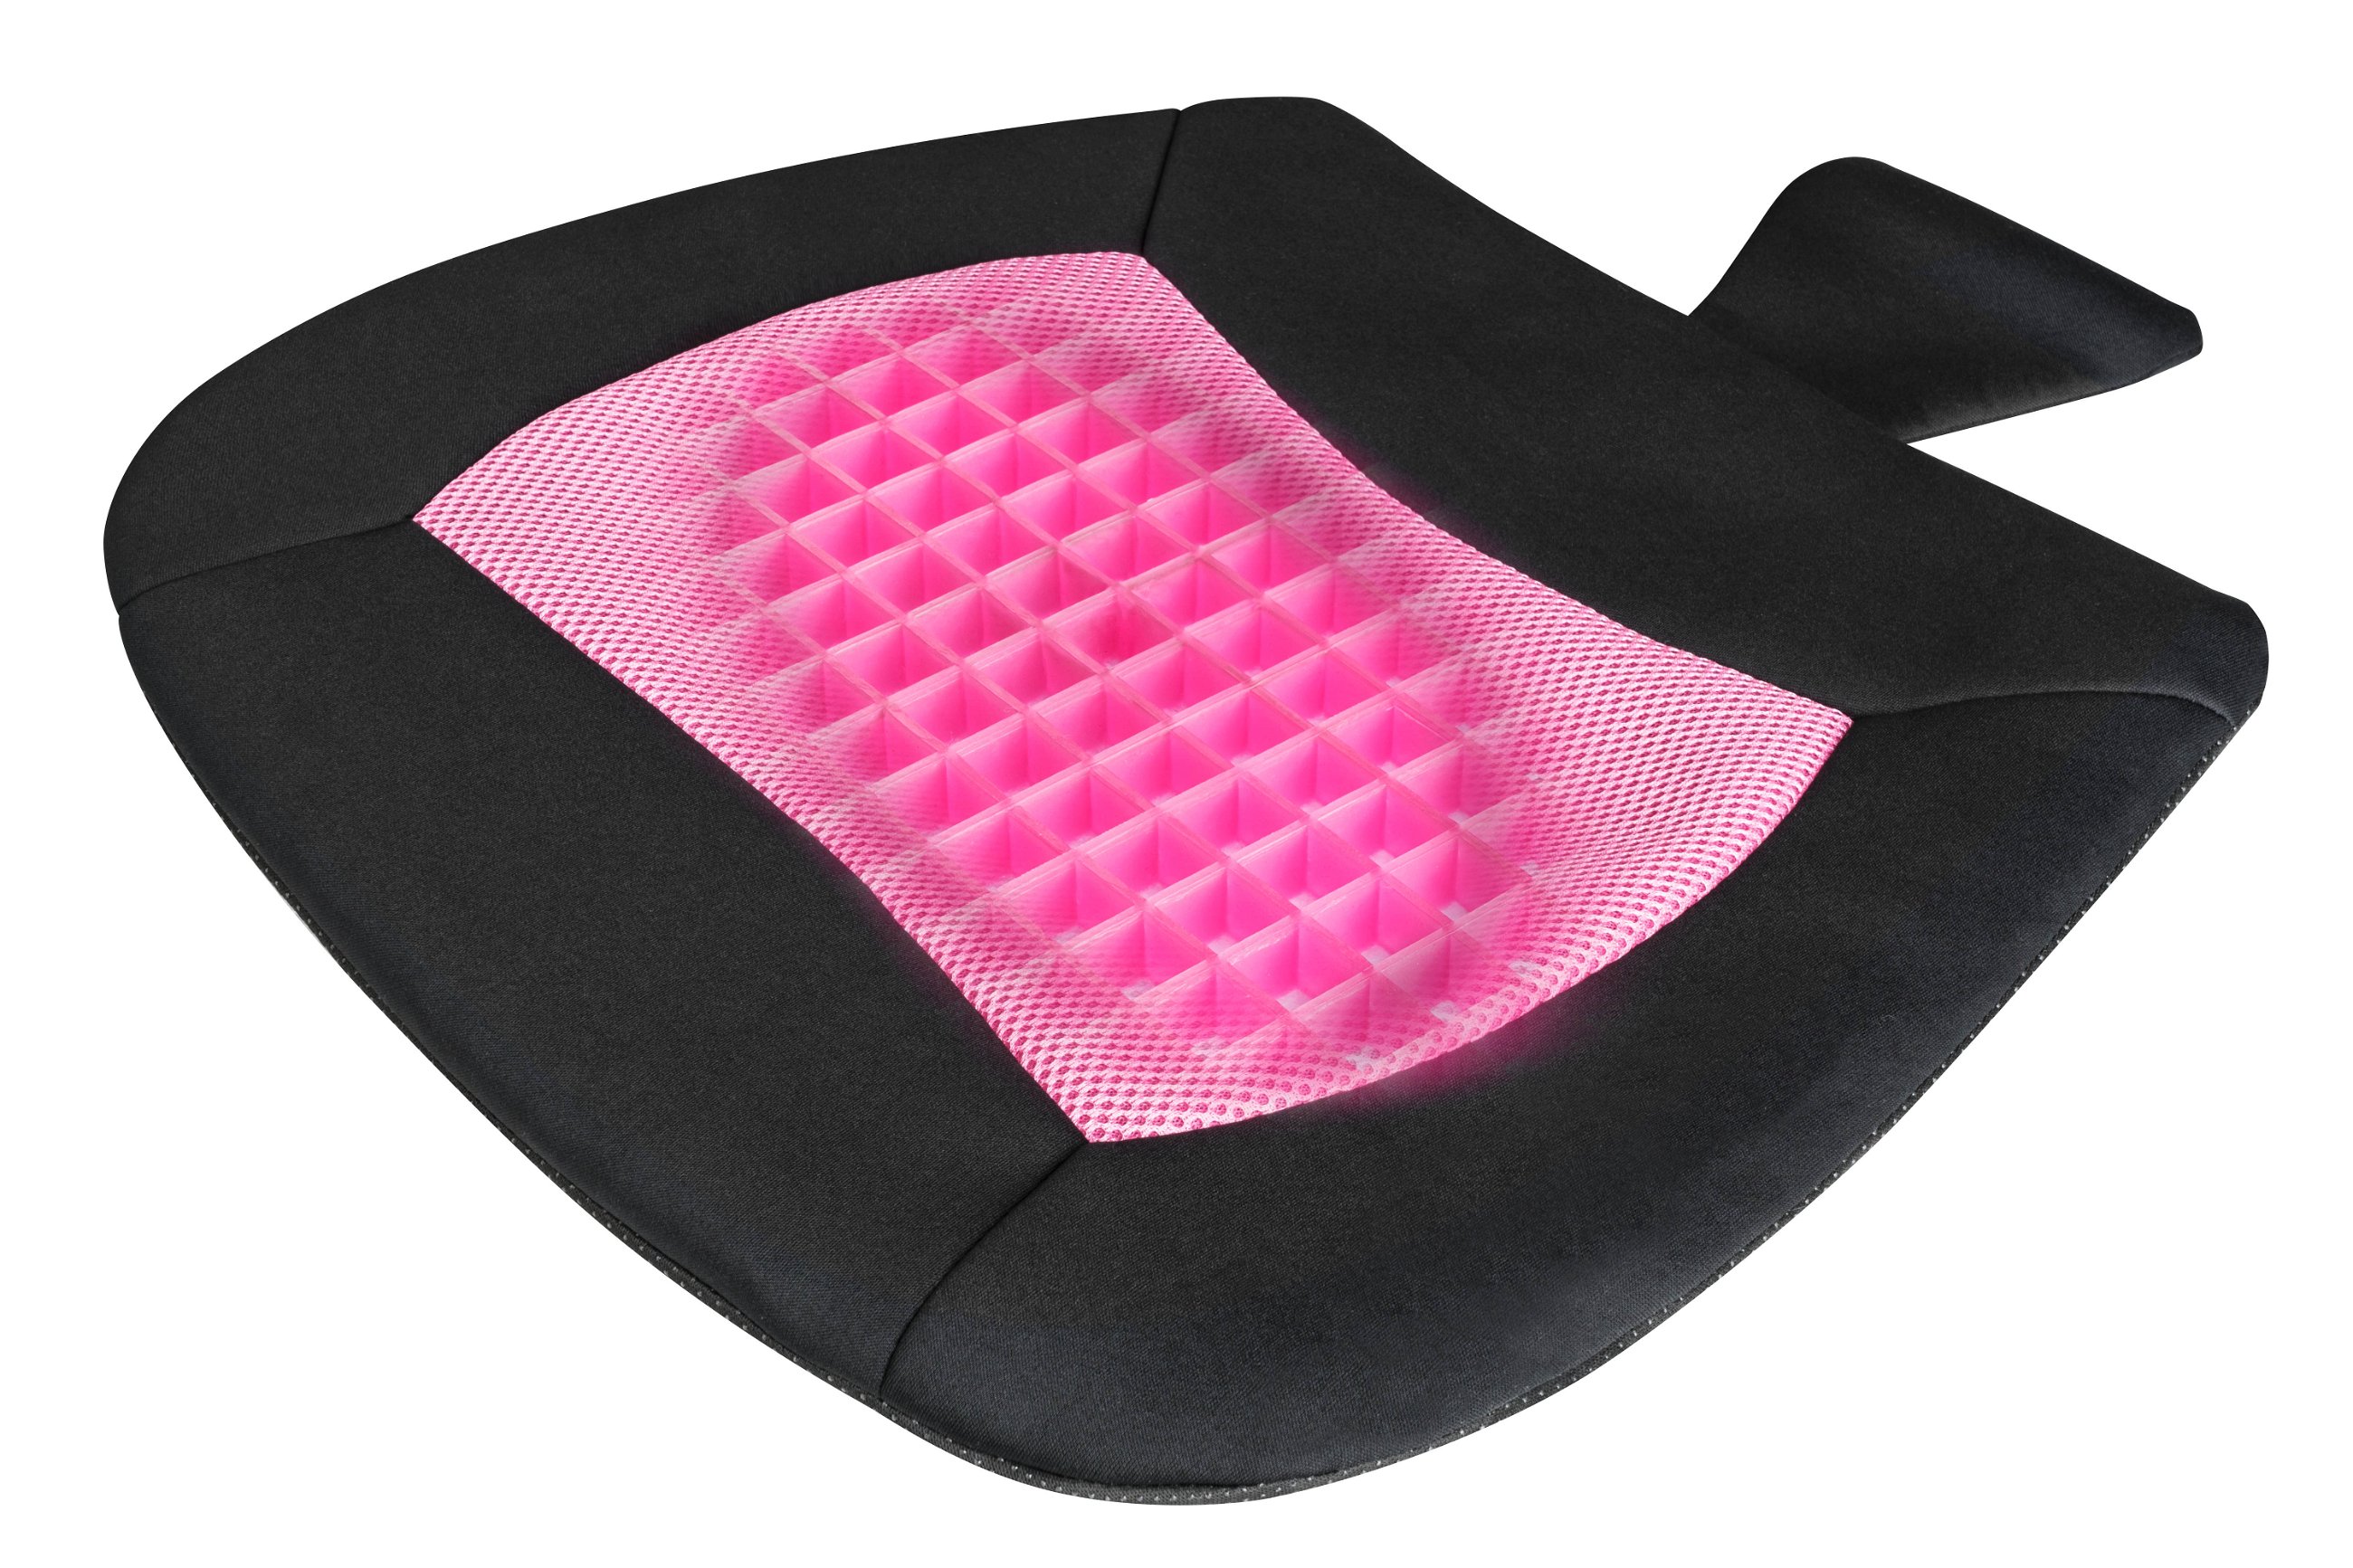 Sitzkissen Cool Touch schwarz-pink